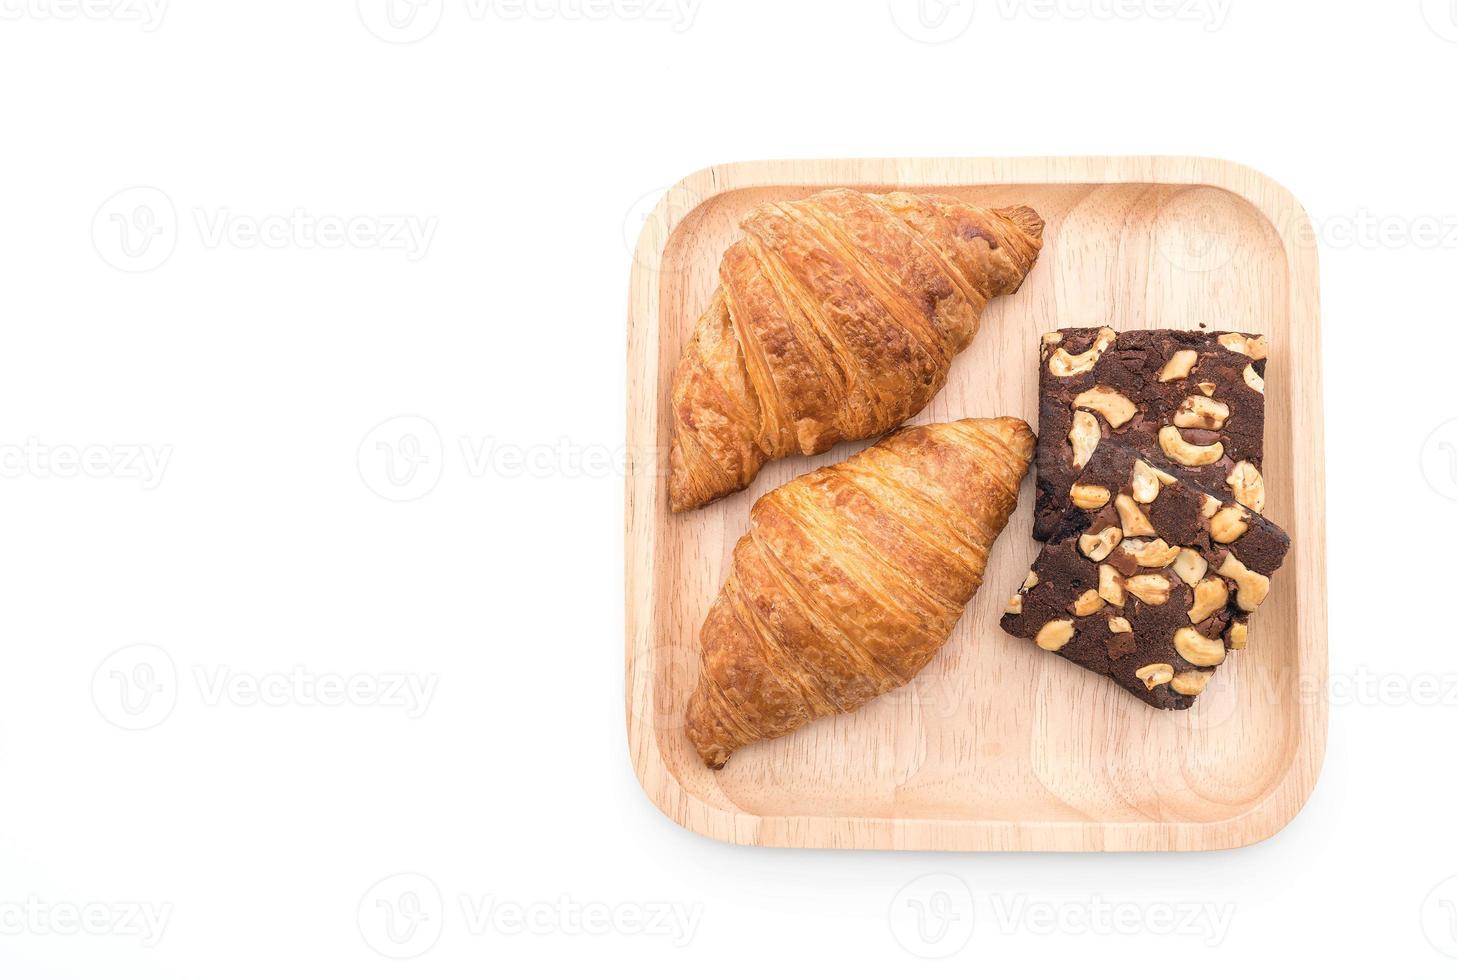 croissant en brownies op tafel foto